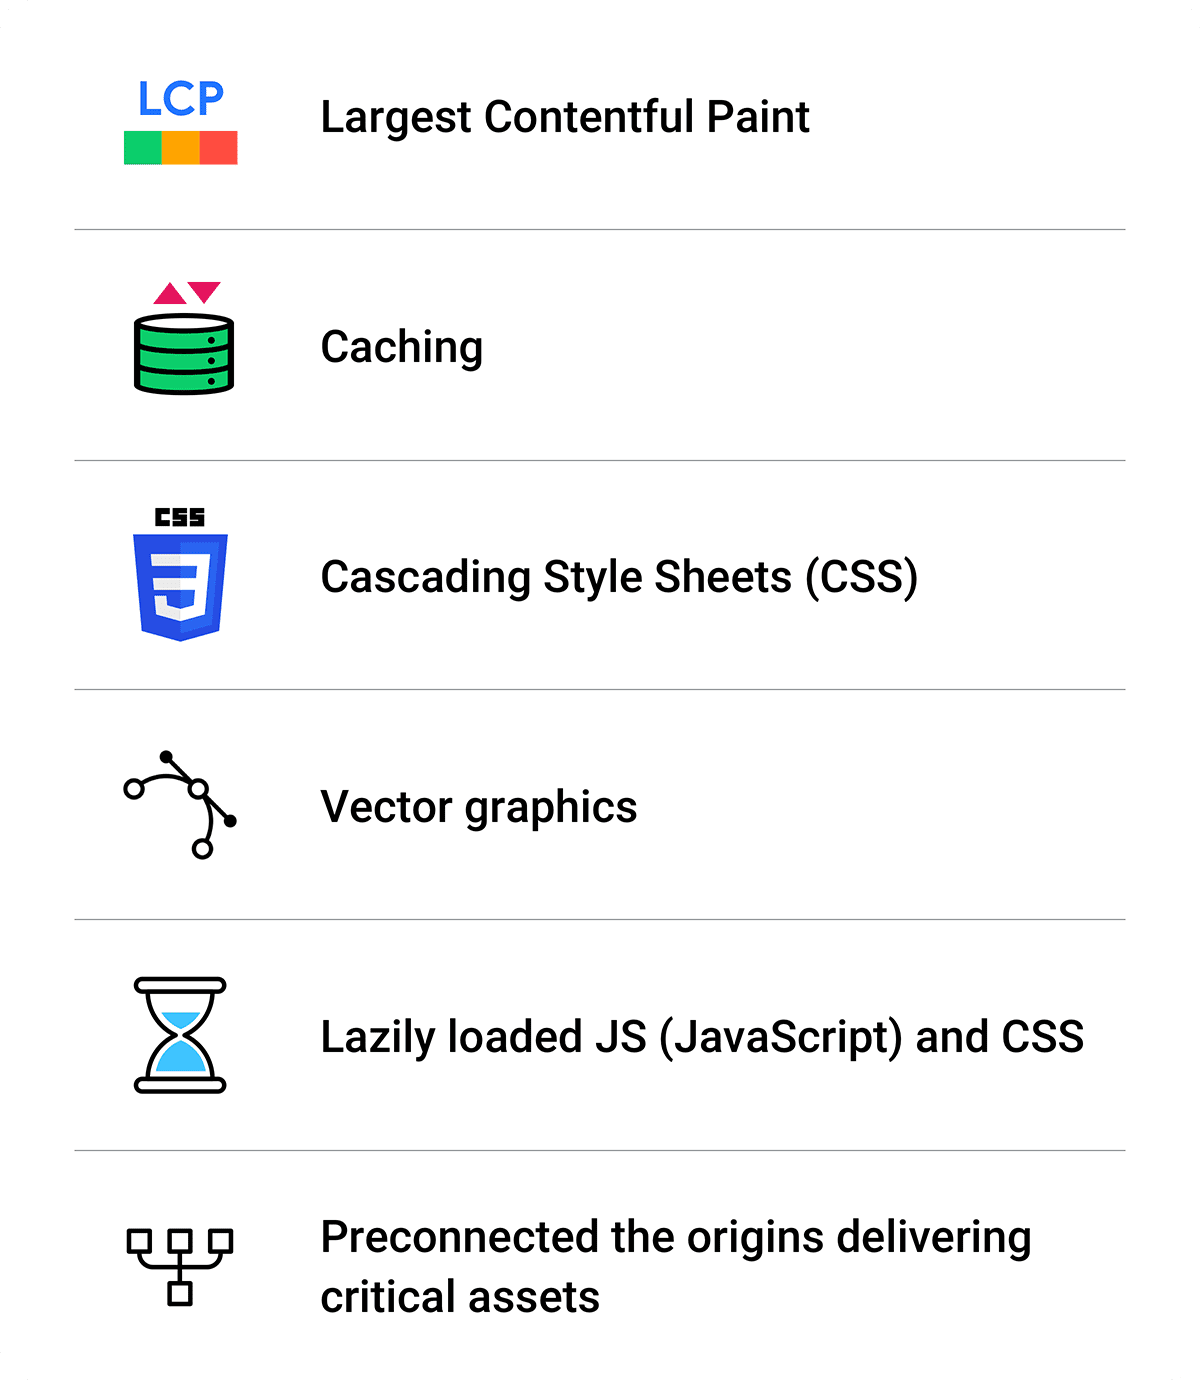 优化摘要：Largest Contentful Paint、Cach、CSS、矢量图形、延迟加载的 JS 和 CSS、预连接。